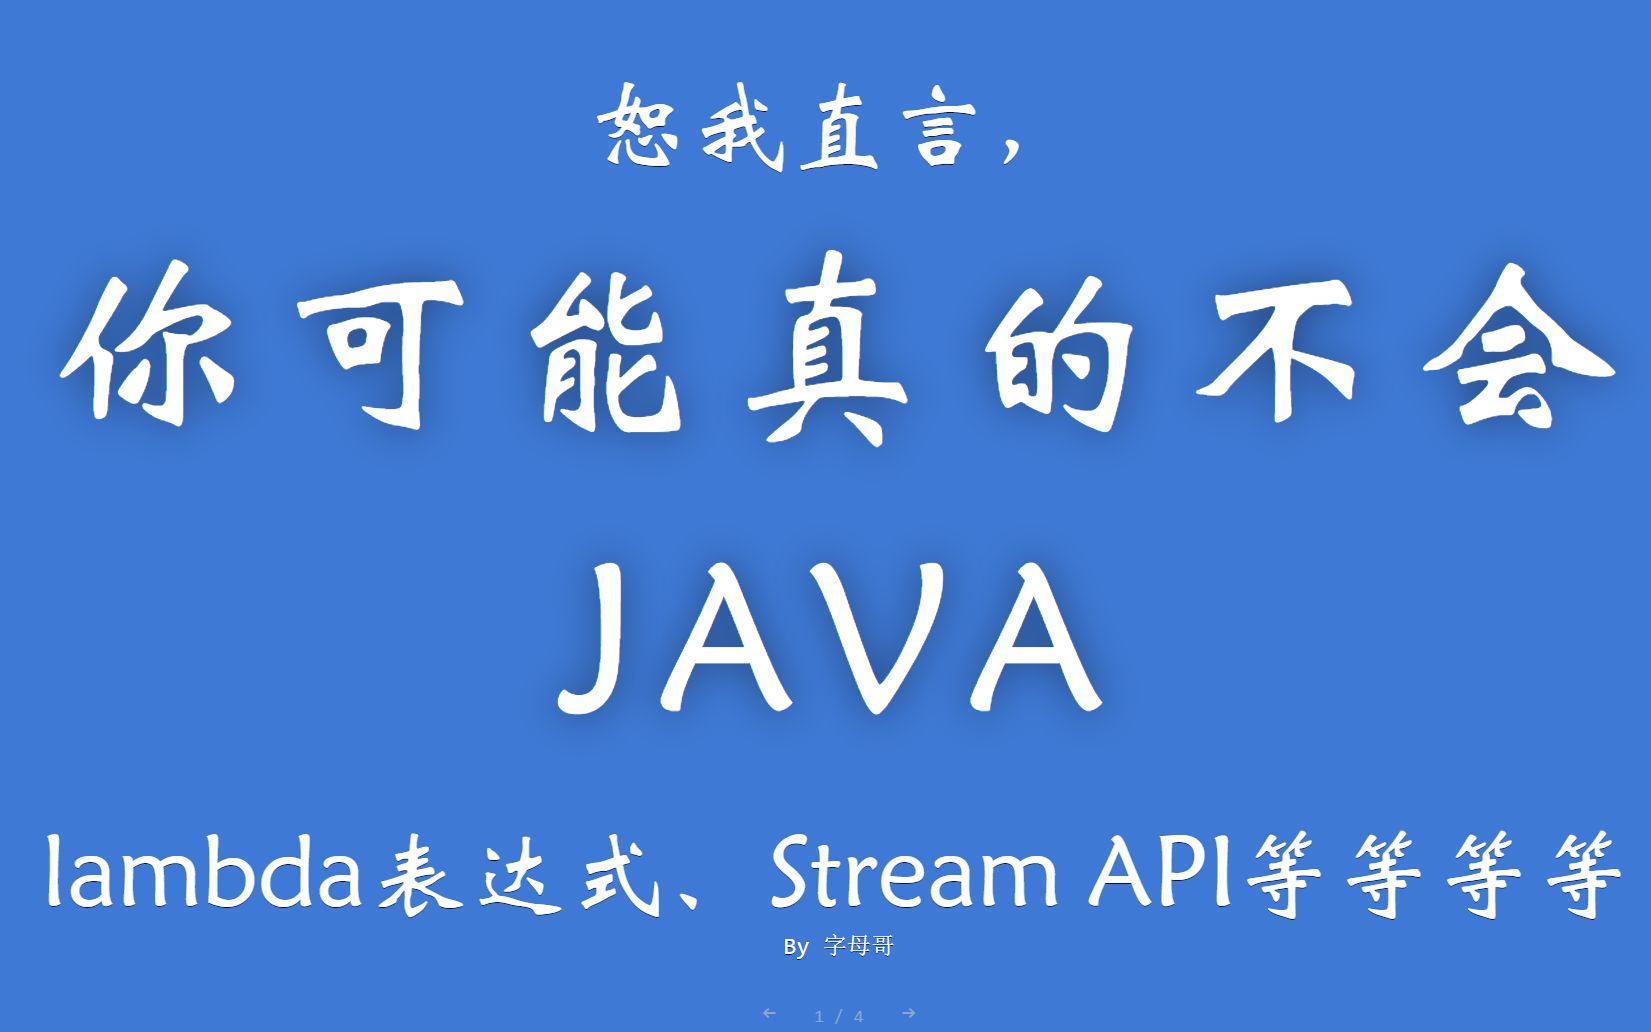 恕我直言你可能真的不会java系列-lambda、streamAPI、文本块等特性深入讲解